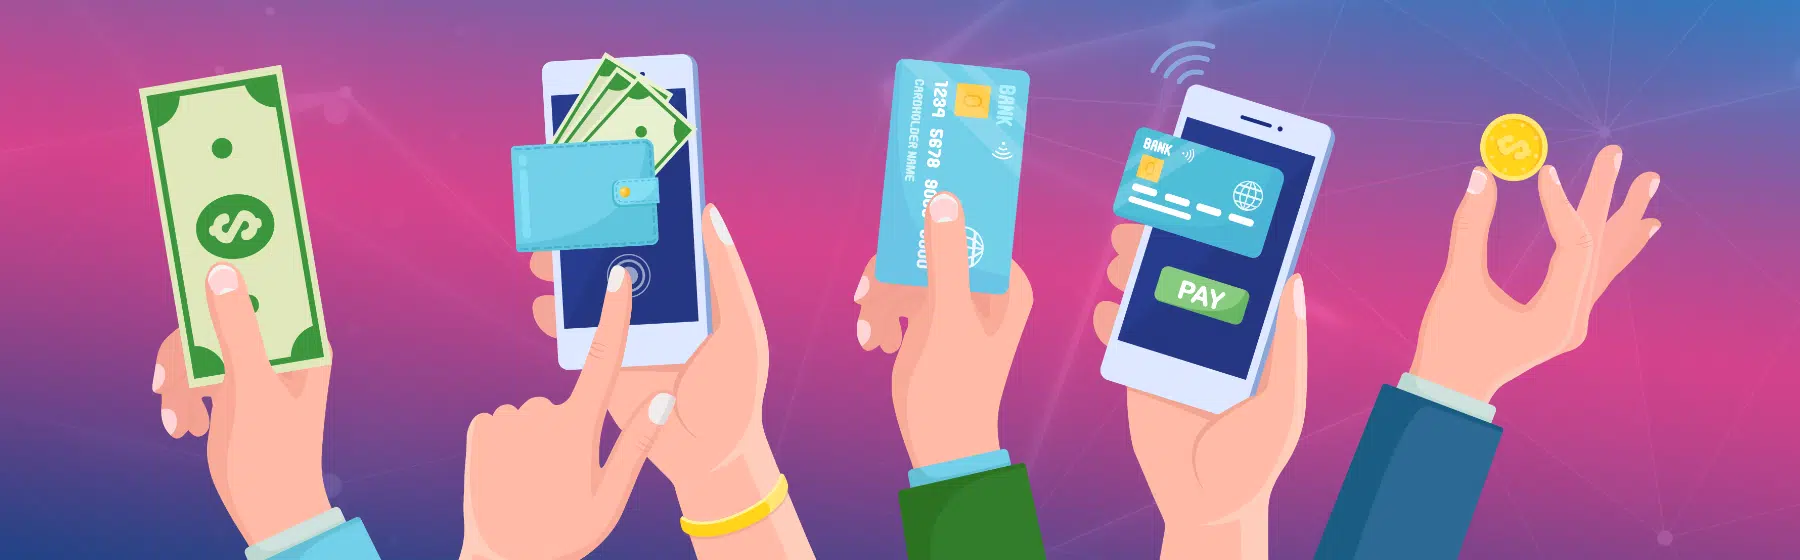 Handen met een mobiel, geld en betaalkaarten die betalingsmethoden vertegenwoordigen